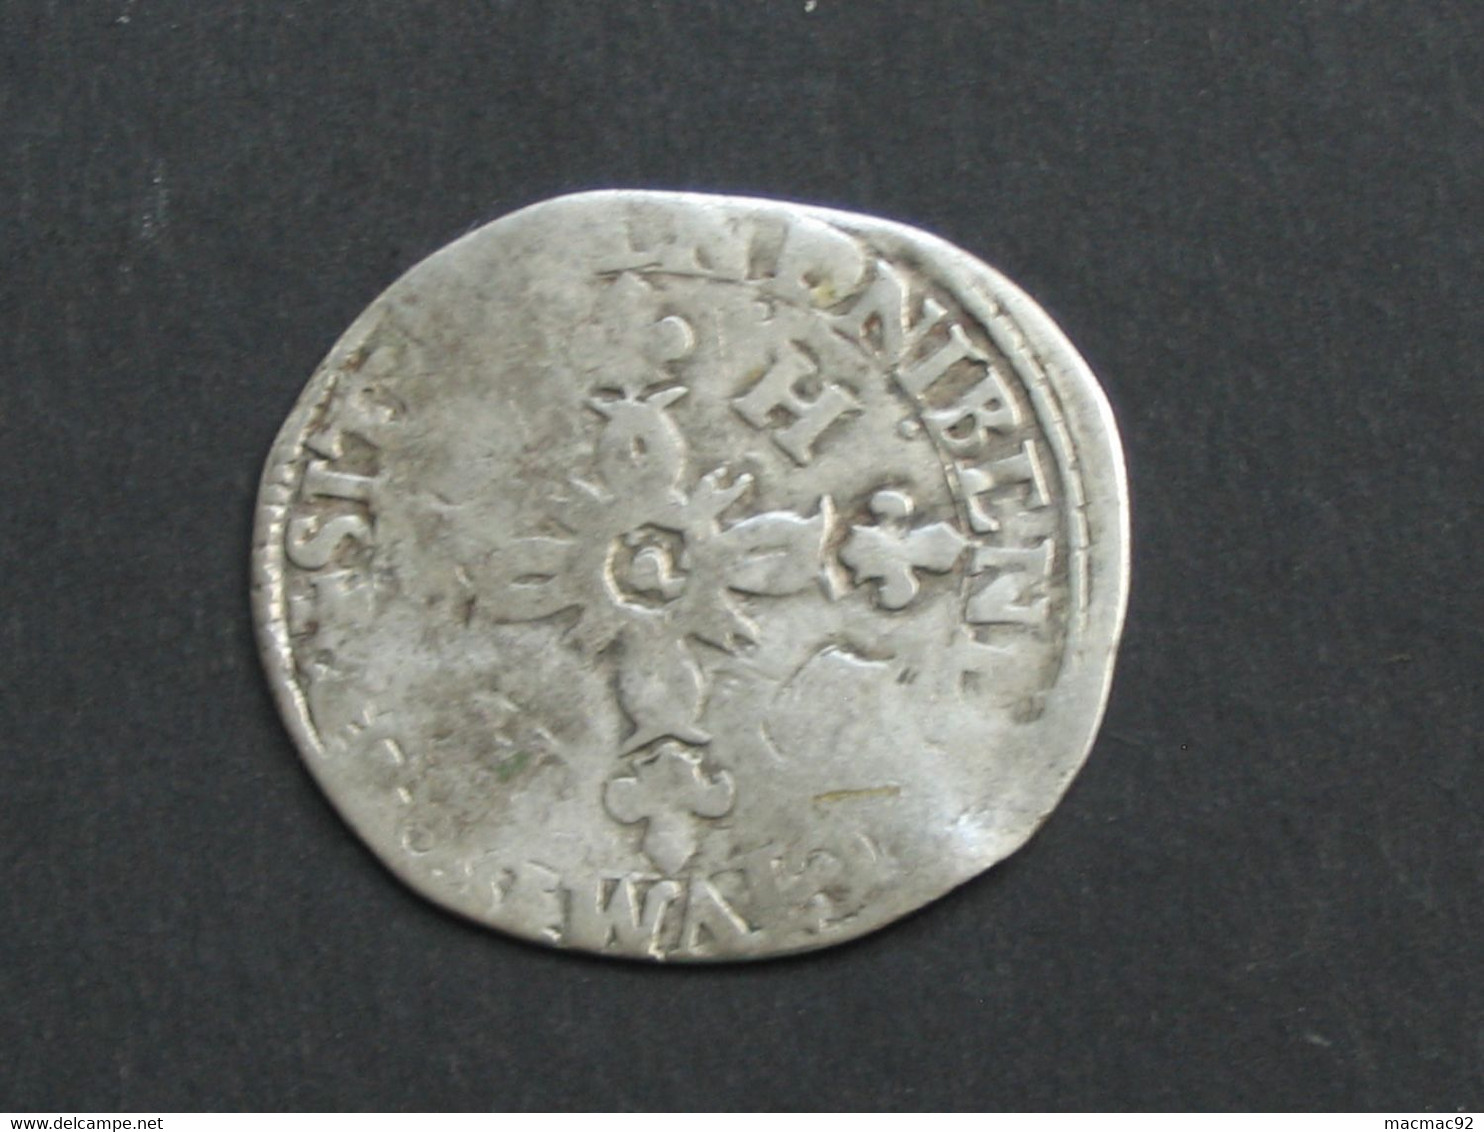 Monnaie Royale En Argent - HENRI II - Douzain Aux Croissants  Vers 1550  ***** EN ACHAT IMMEDIAT ***** - 1547-1559 Henri II